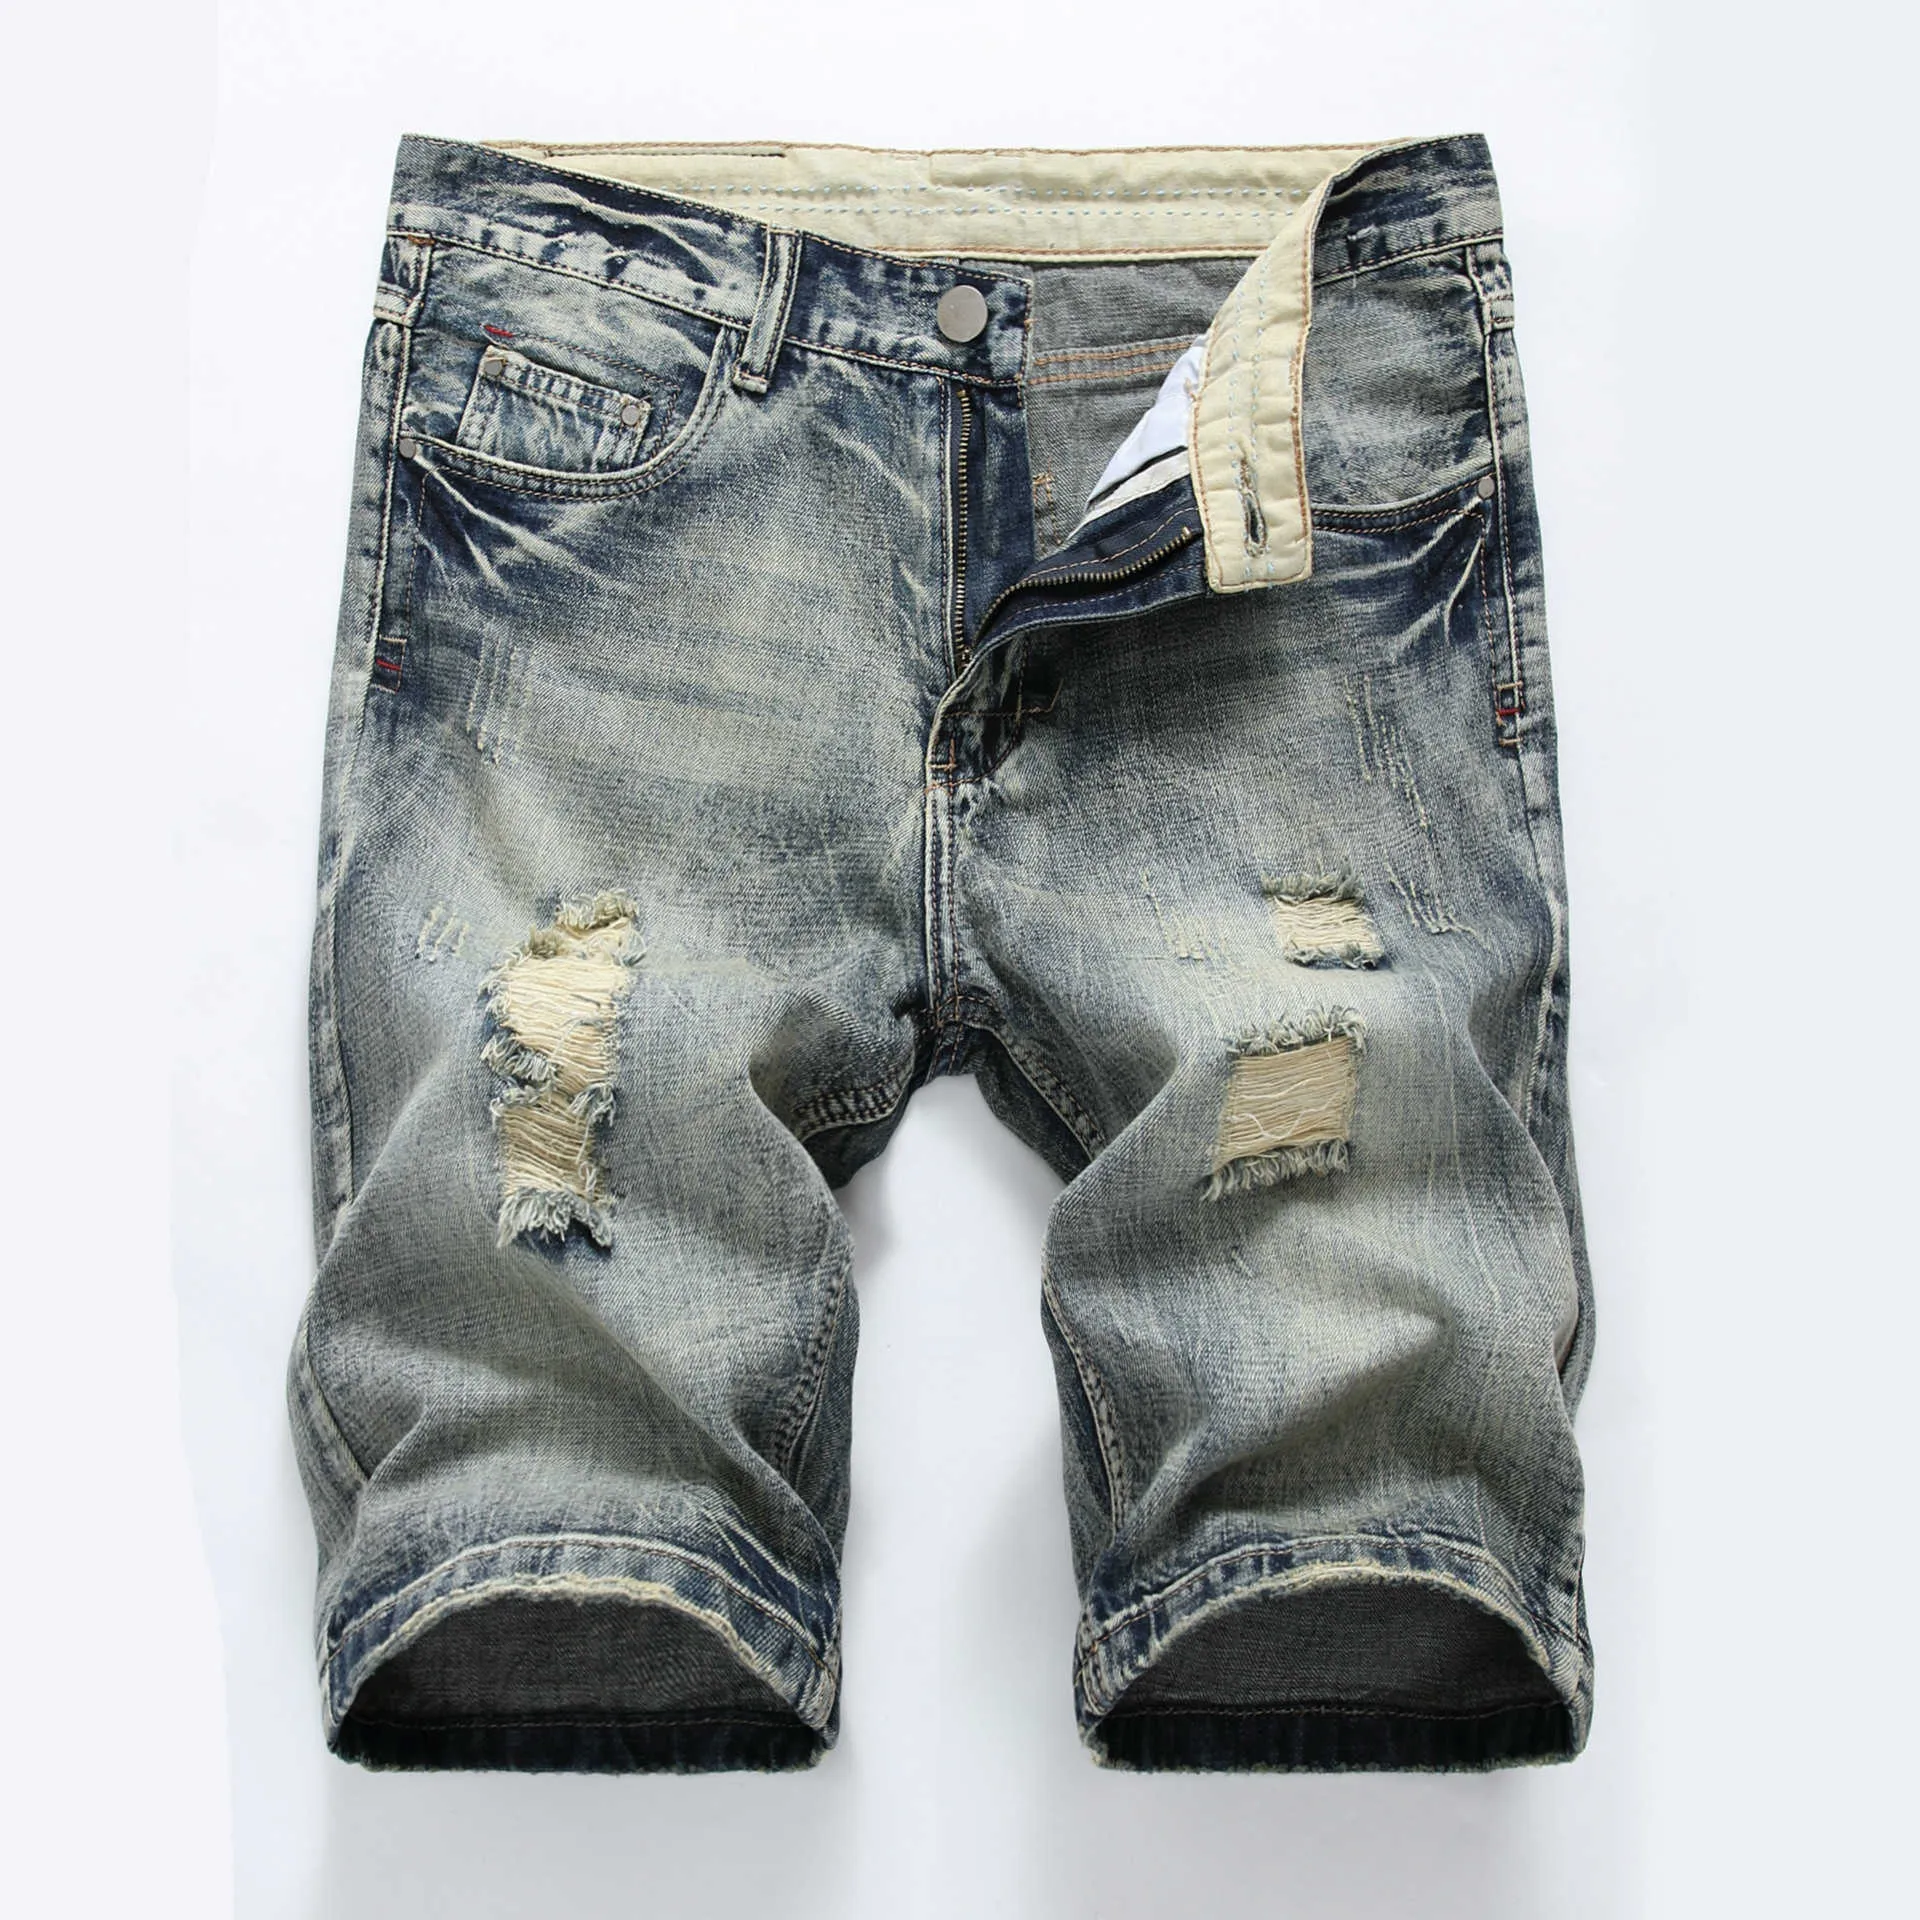 Männer Shorts Heißer Sommer Casual Ripped Shorts Jeans Männer Marke Waschen Baumwolle Distressed Gerade Herren Denim Shorts Bermuda Jeans Shorts Hommes G230303